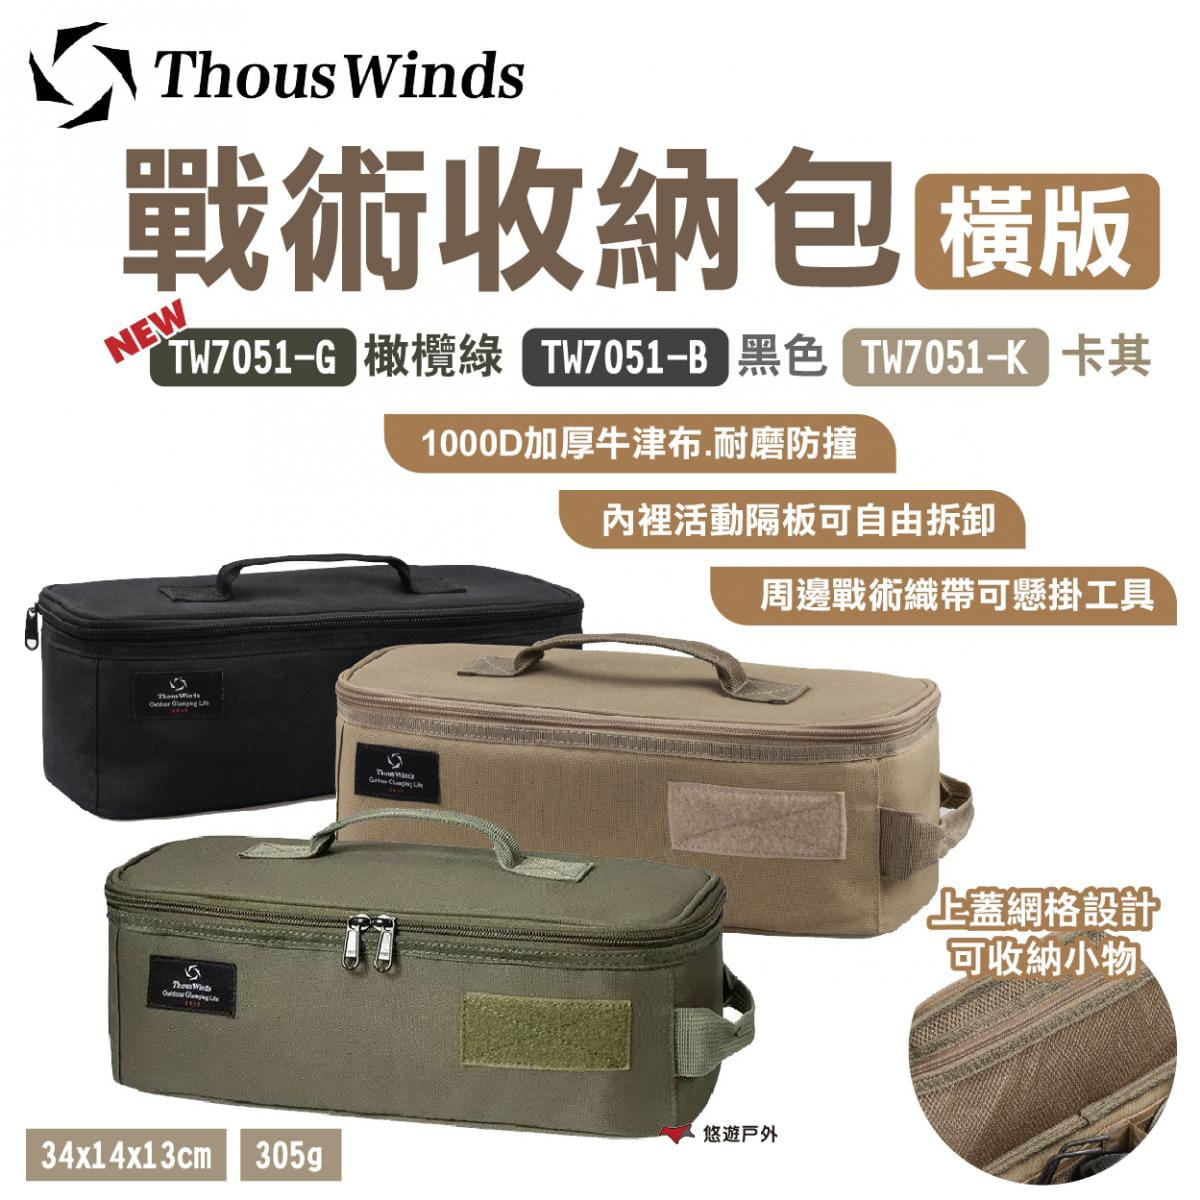 【Thous Winds】戰術收納包 橫版 黑/卡其/橄欖綠 TW7051-B.K.G 悠遊戶外 1